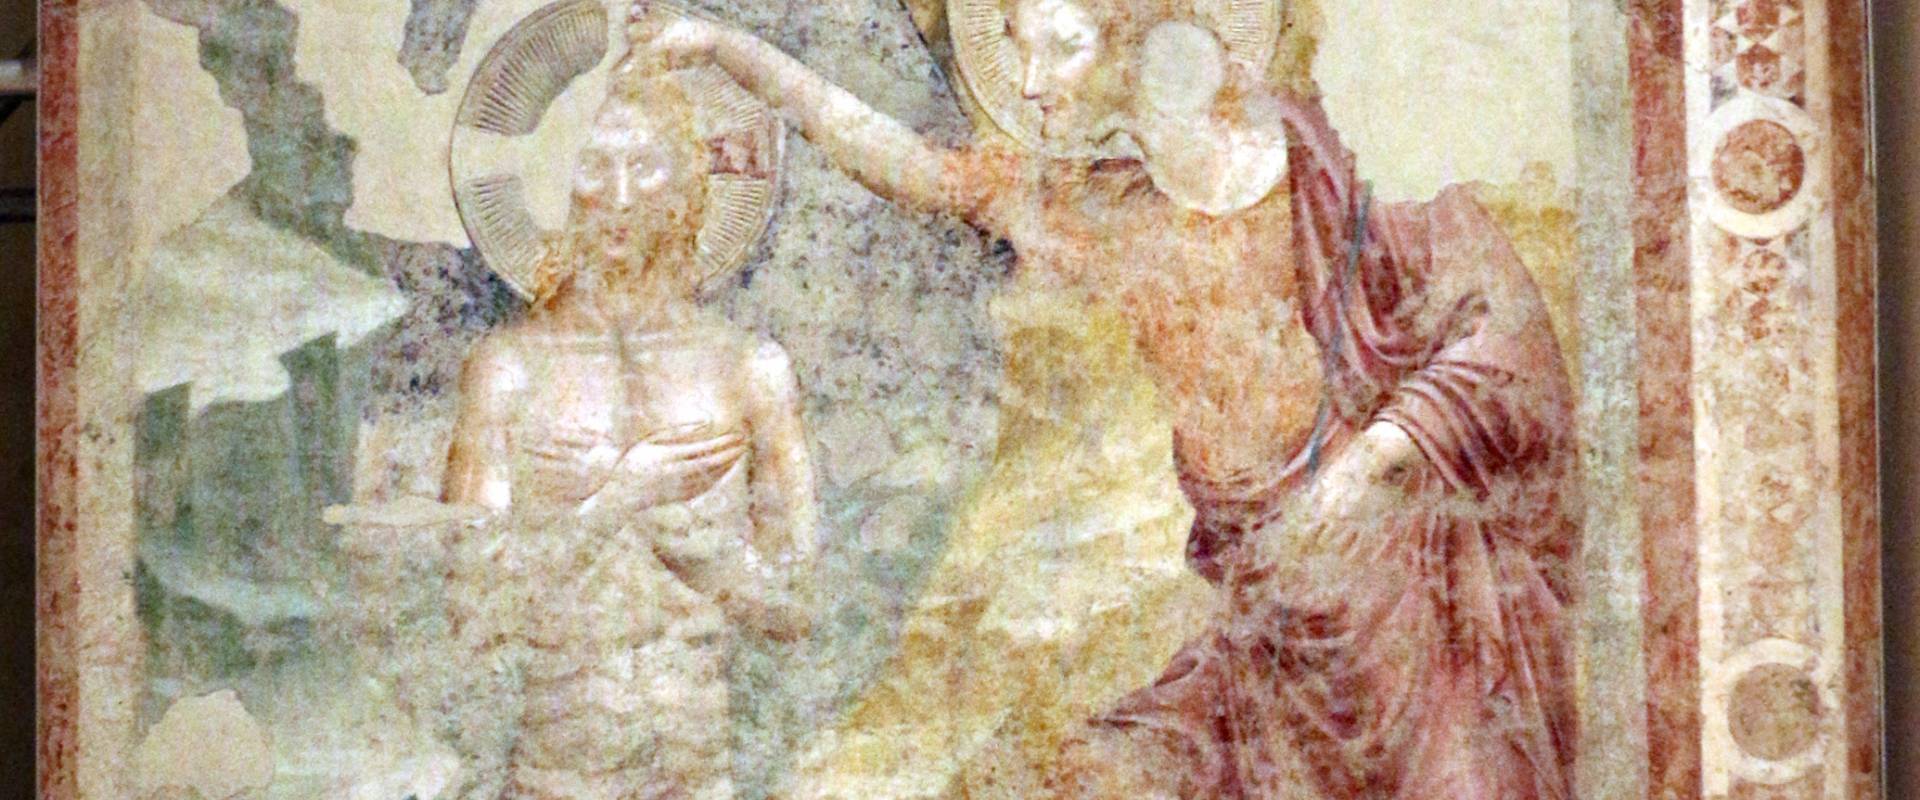 Pietro da rimini e bottega, affreschi dalla chiesa di s. chiara a ravenna, 1310-20 ca., battesimo di cristo 01 foto di Sailko